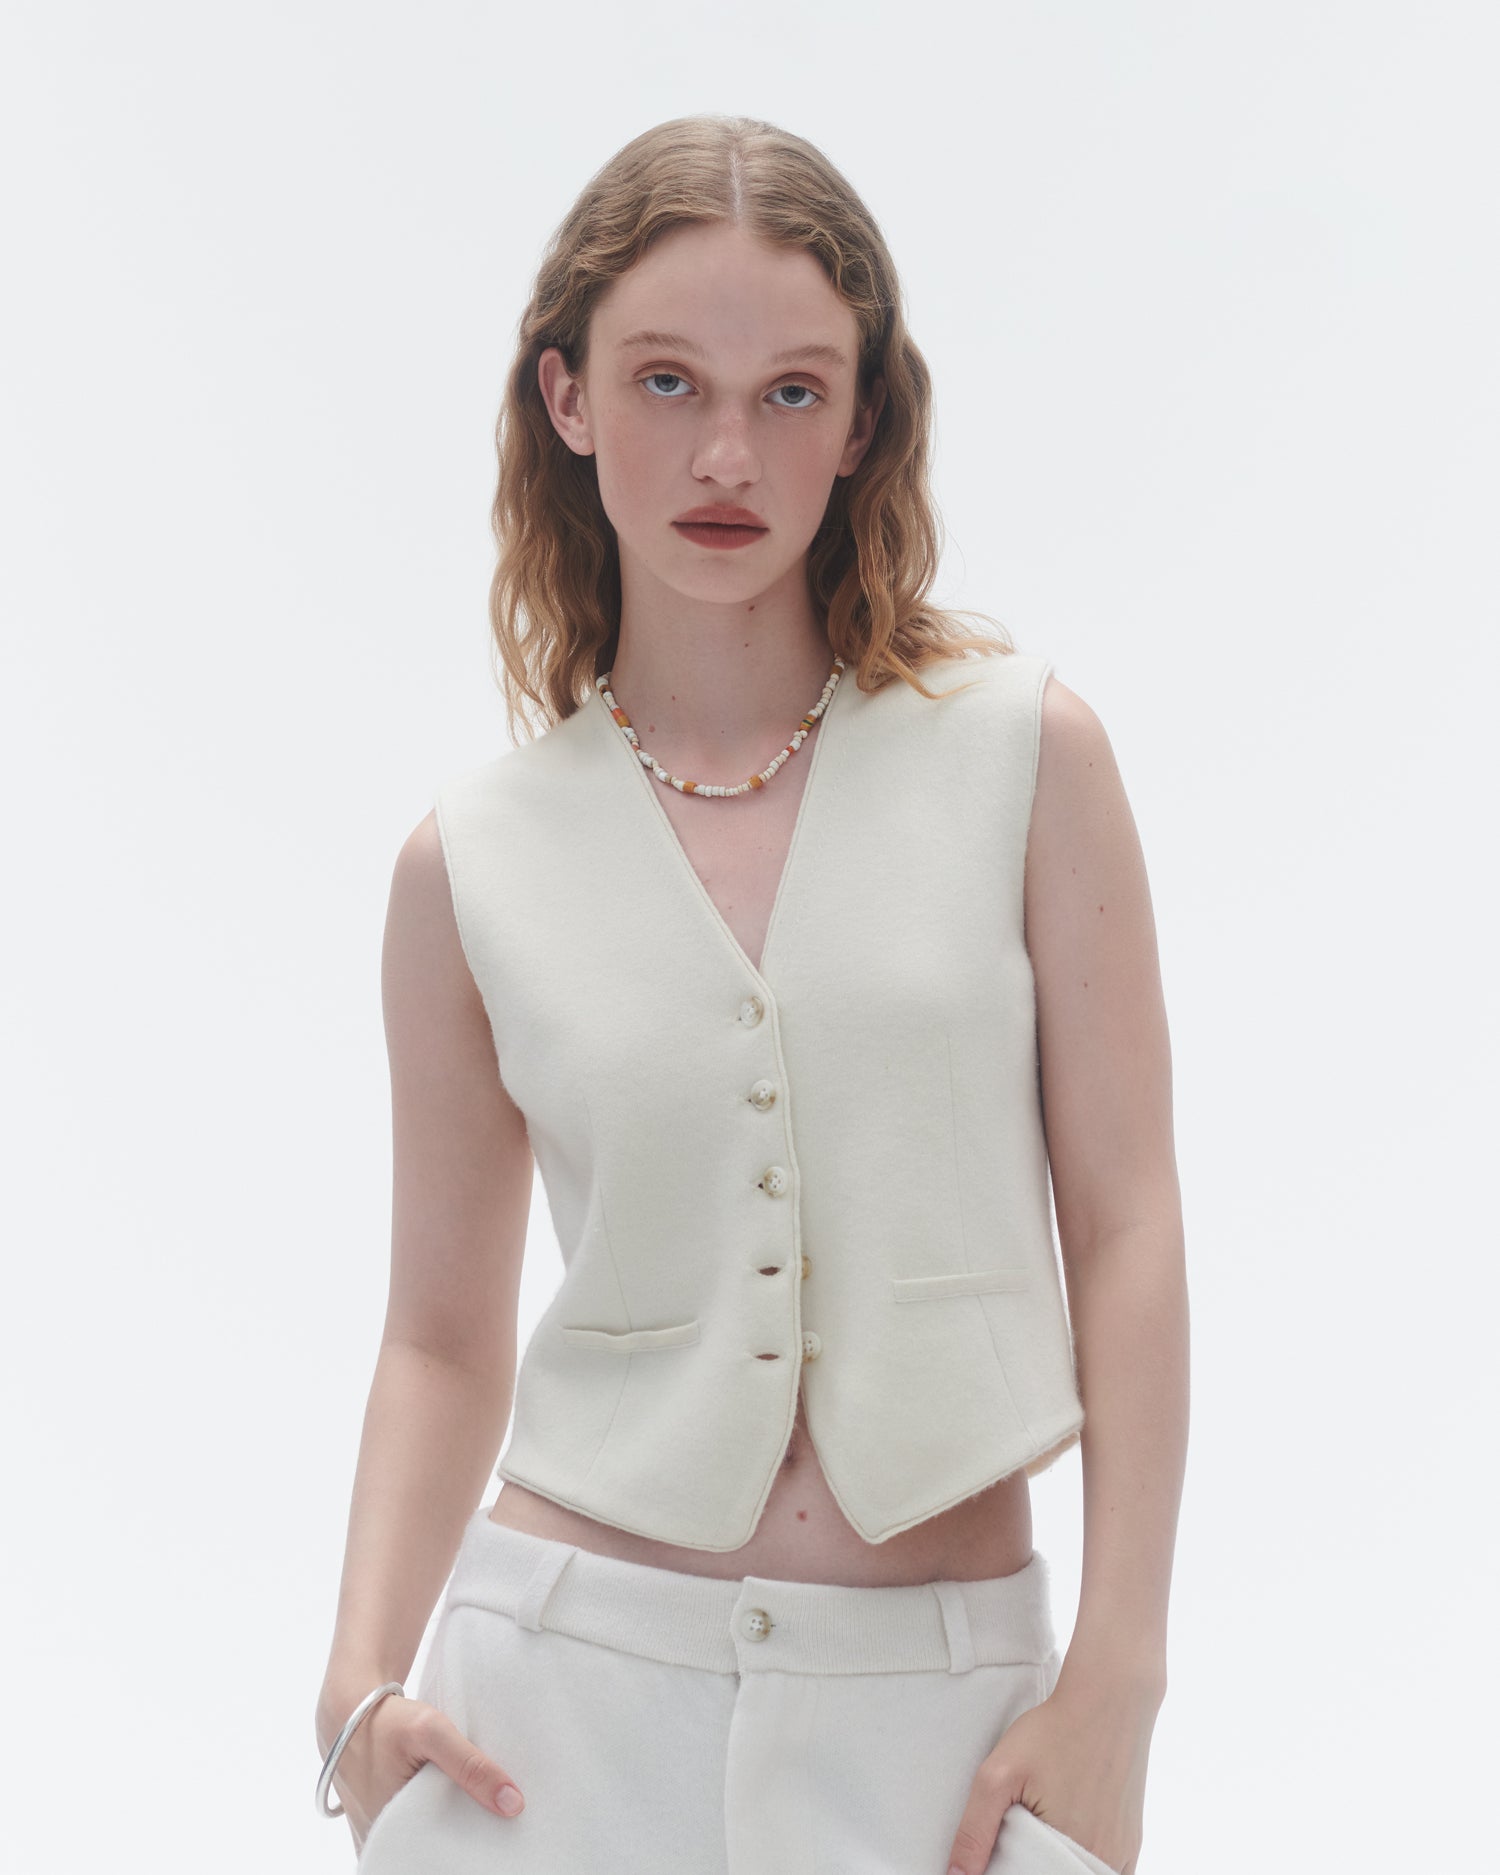 Buy BenCreative Women's Sportswear Wear 2Pc Sets Fashion Vest